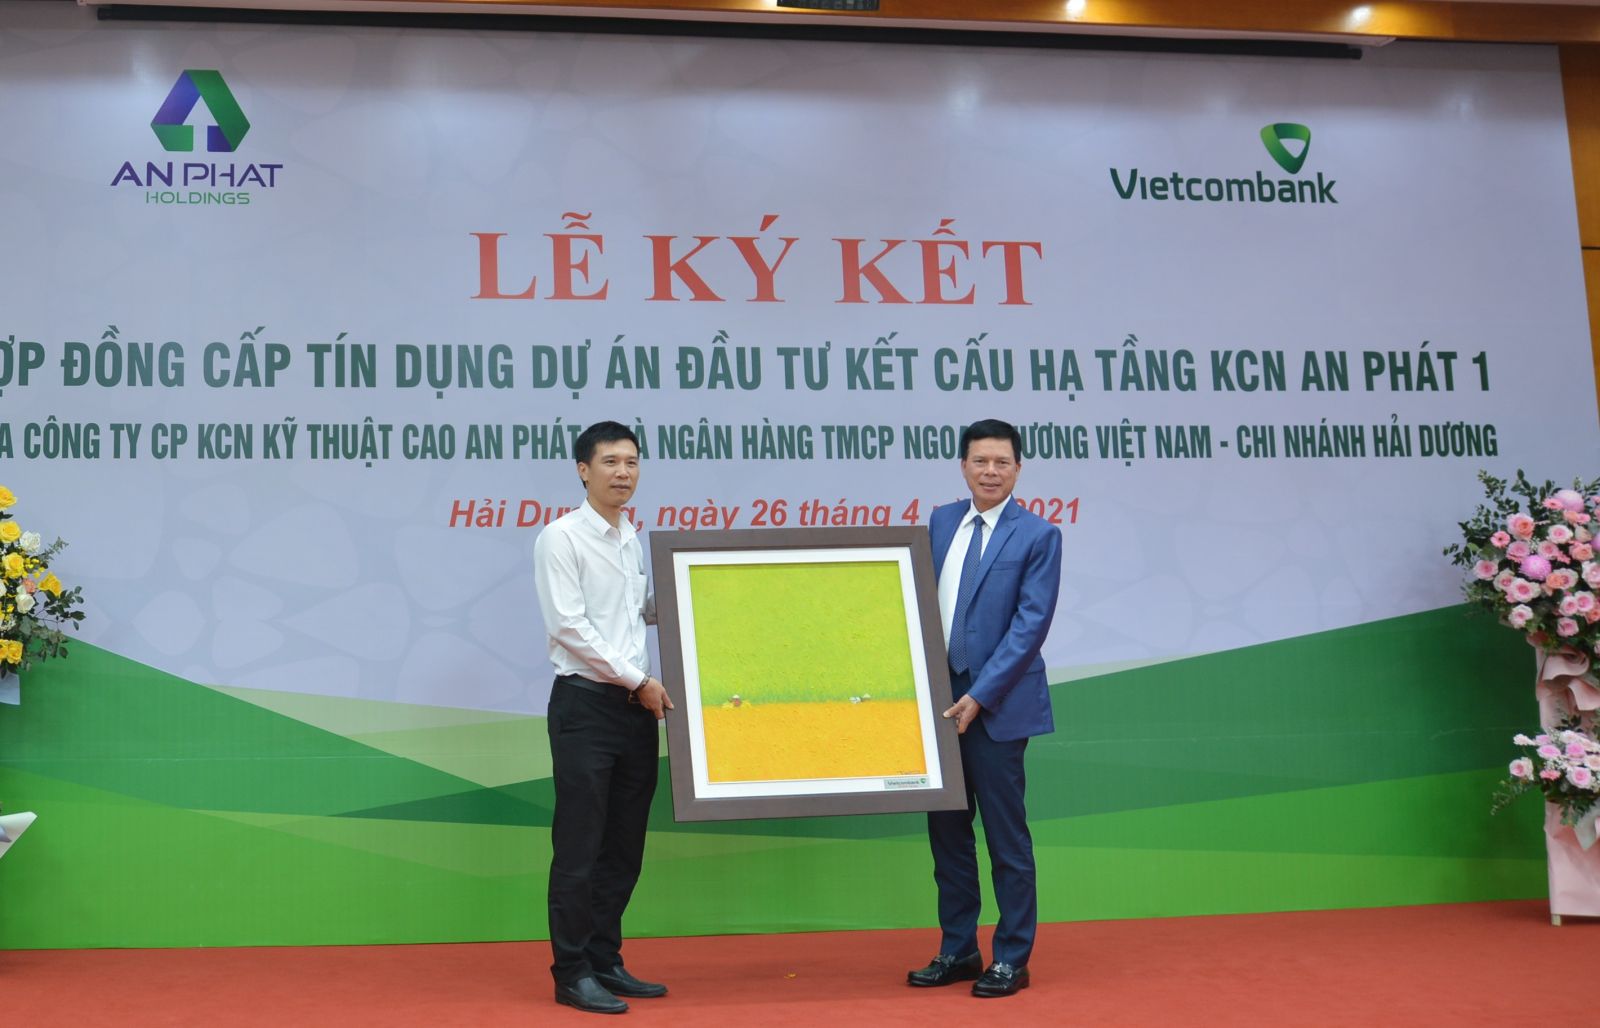 Ông Phạm Mạnh Thắng – Phó Tổng Giám đốc Vietcombank (bên phải) trao quà lưu niệm cho đại diện lãnh đạo Tập đoàn An Phát